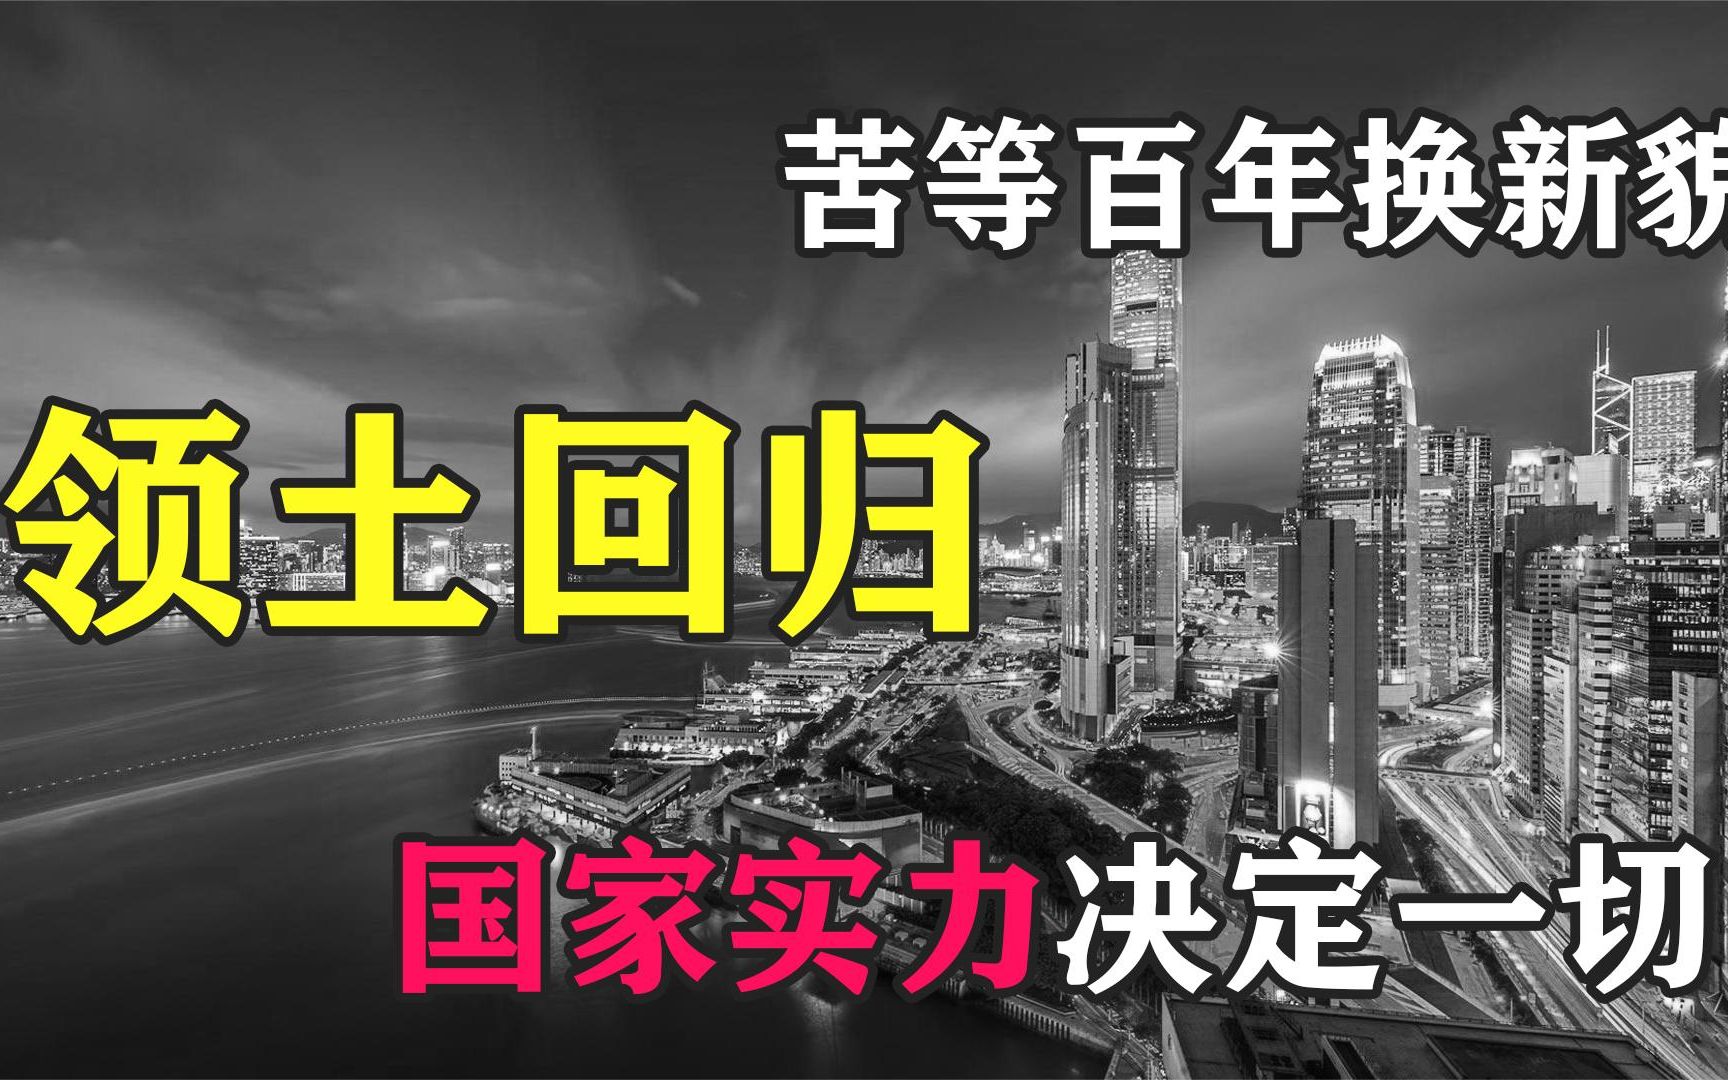 香港回归有多难？中国苦等百年，用实力证明国家领土寸步不让！